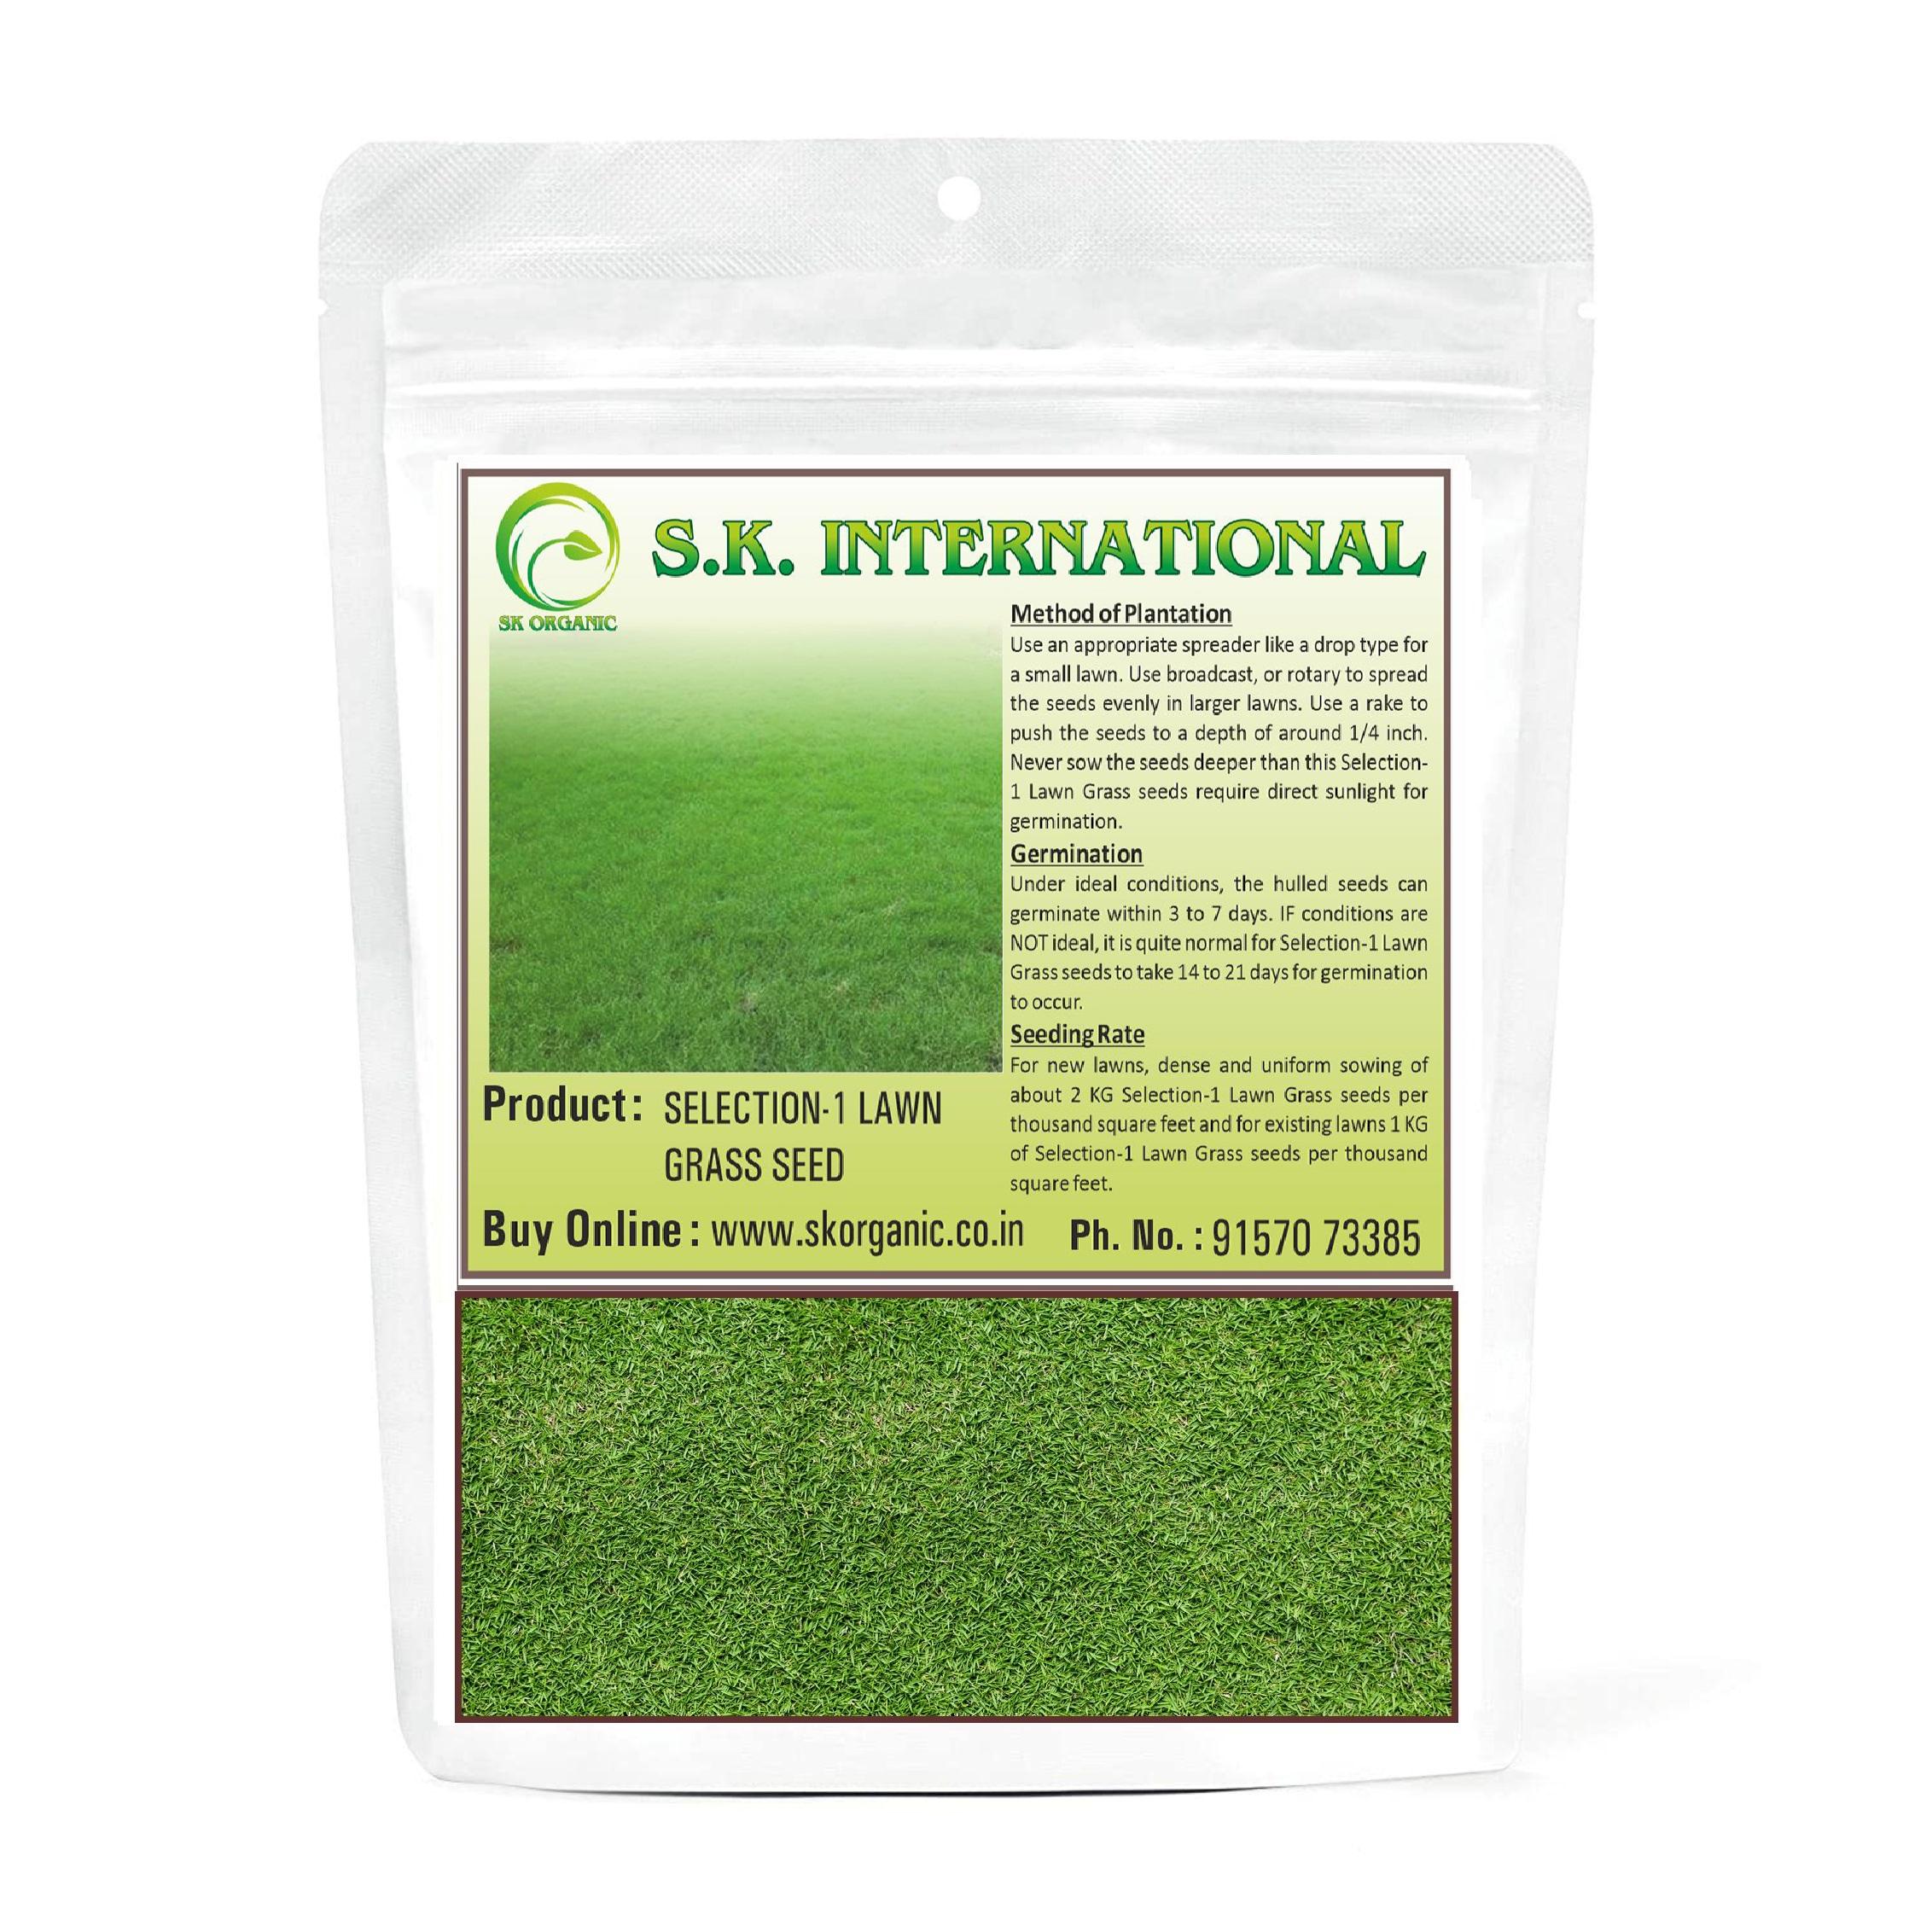 SK Organic Selection 1 Lawn (Doob) Grass seeds for Garden and Farmhouse 